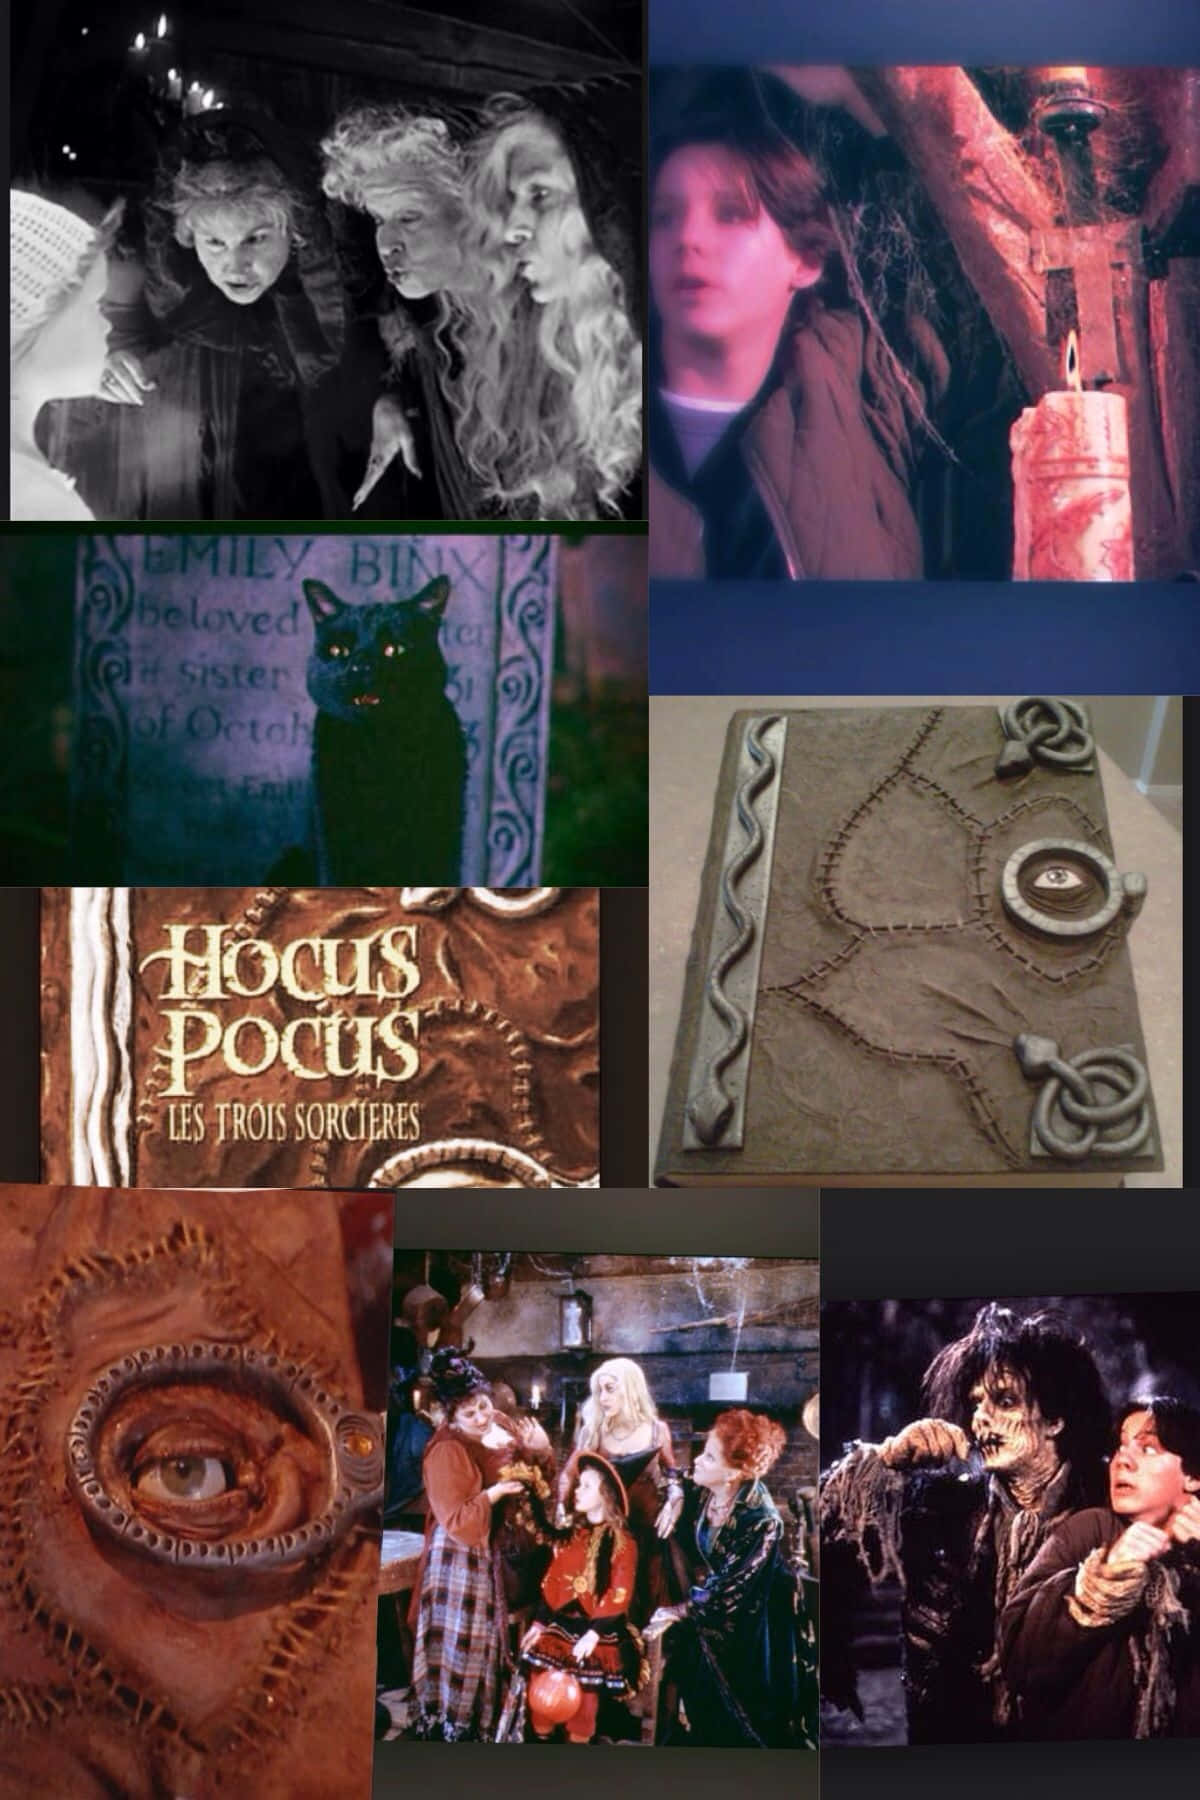 Hocus Pocus Movie Collage Wallpaper